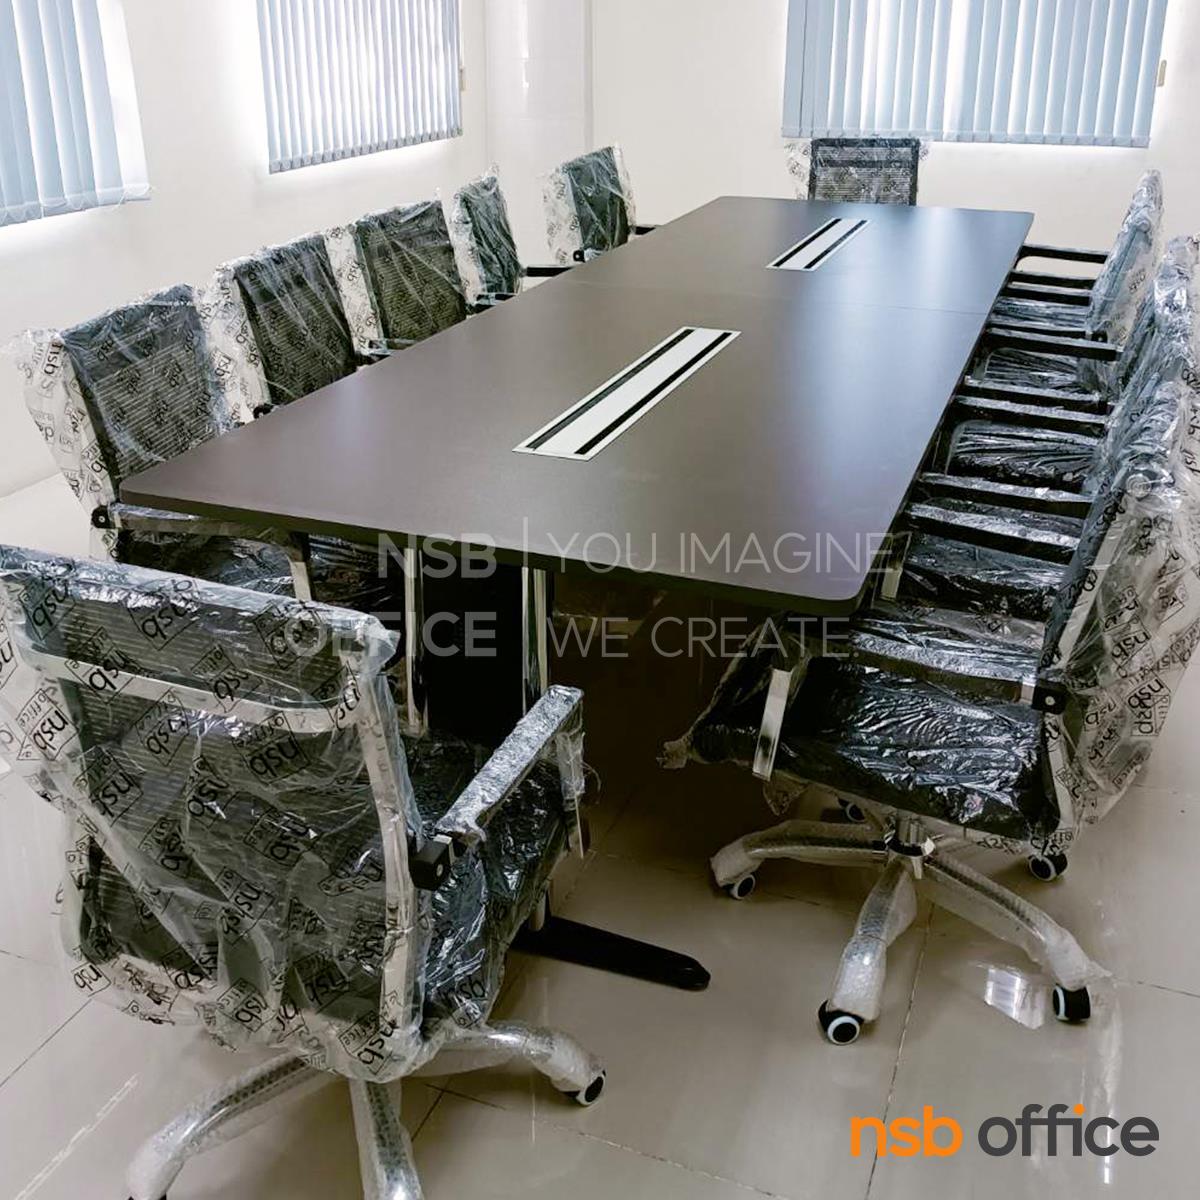 โต๊ะประชุมสี่เหลี่ยมมุมมน  ขนาด 360W, 420W, 480W cm.  พร้อมช่องรางไฟยาวพิเศษ ขาเหล็กตัวไอ